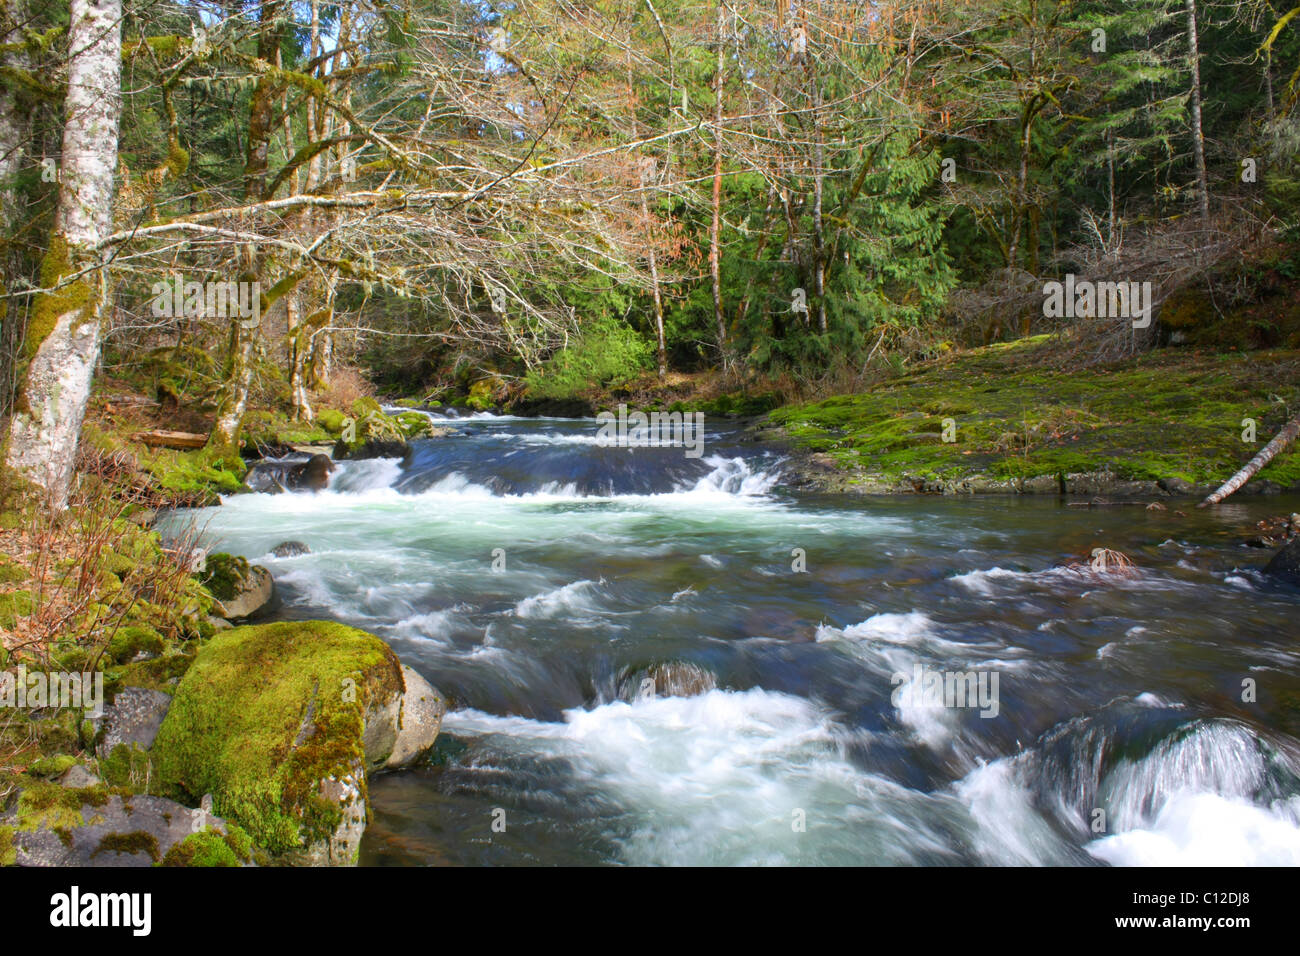 Eine Verdrehung 40,237.06527 Creek water river stream mit Stromschnellen durch Frühling grüne Laub- und Nadelbäume tree forest fließt. Stockfoto